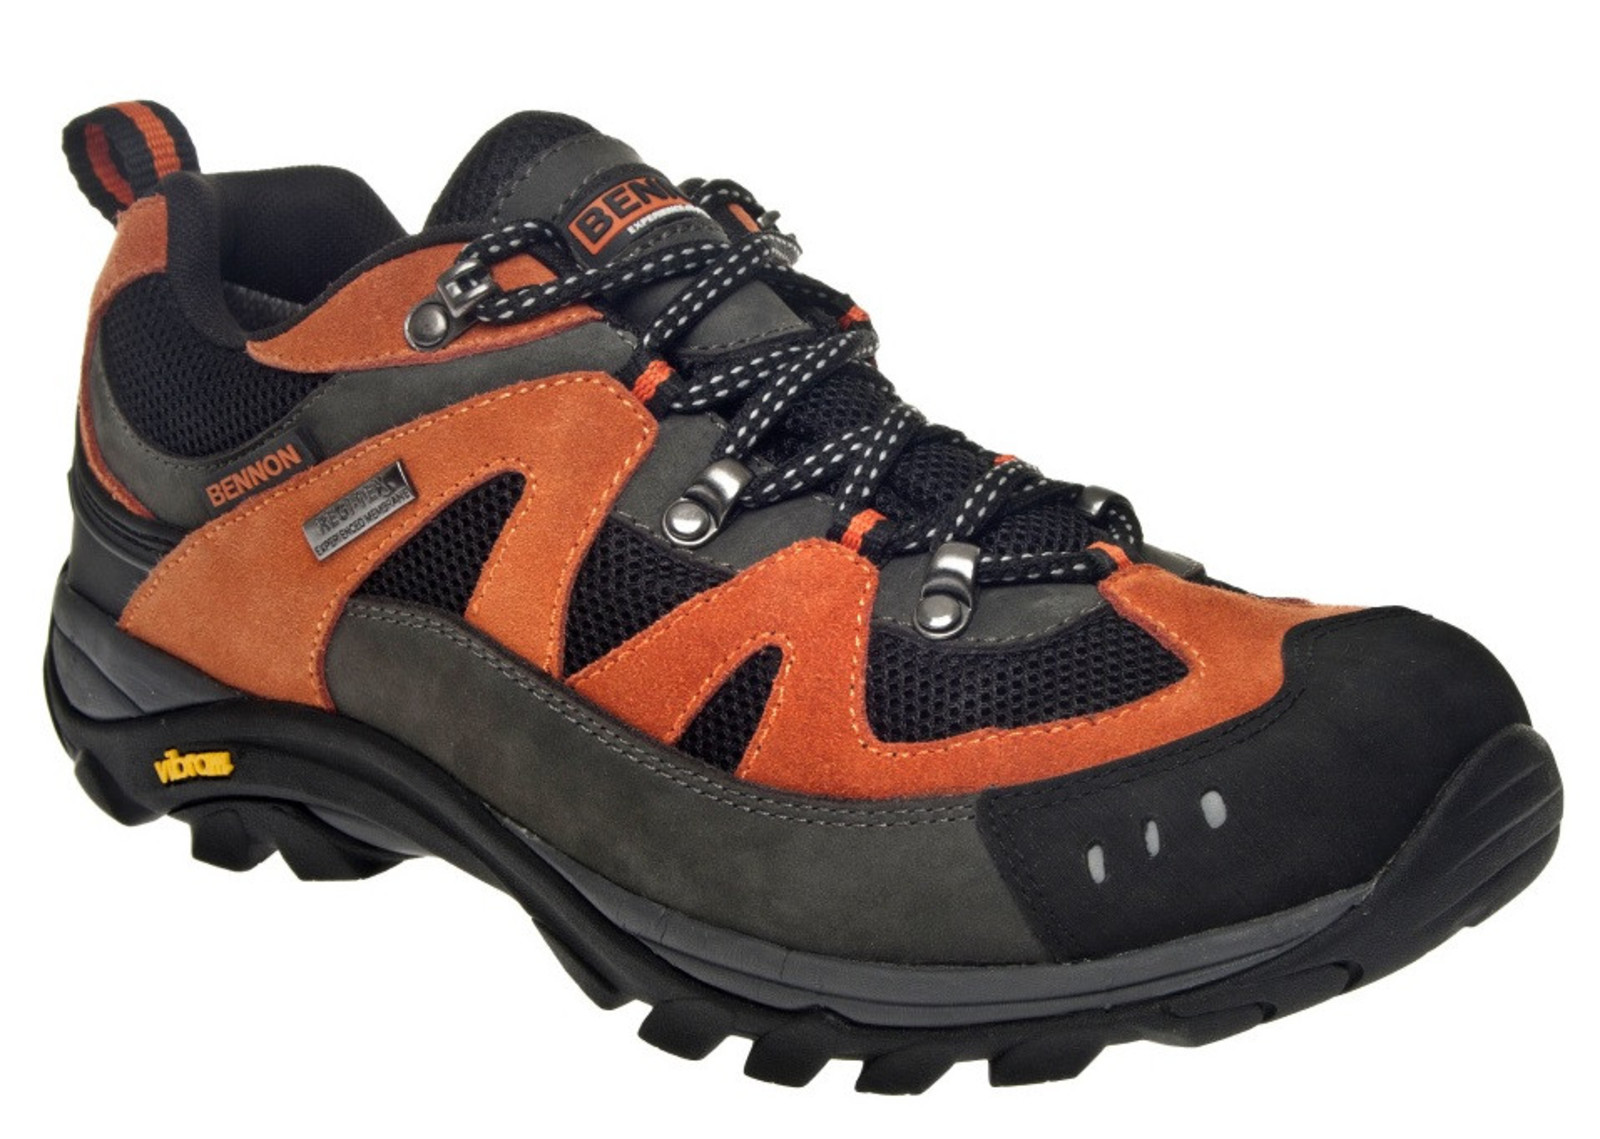 Outdoorové topánky Bennon Emperado s membránou - veľkosť: 47, farba: sivá/oranžová